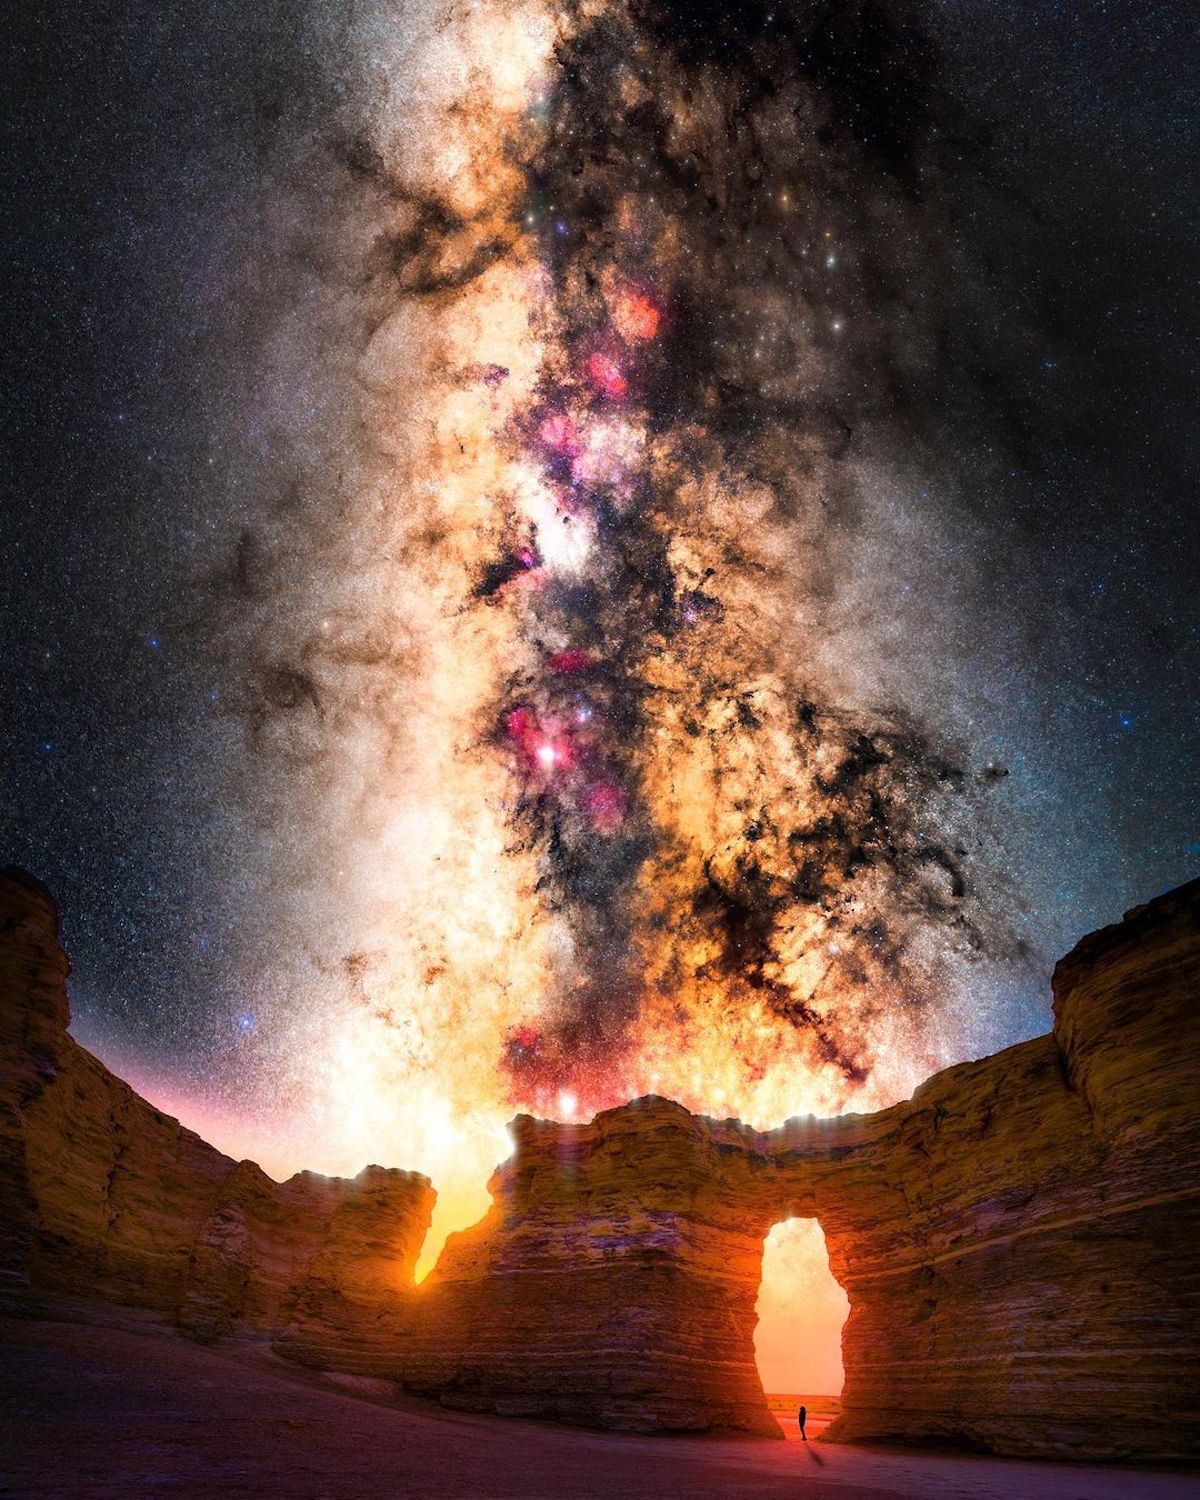 Milky Way Photo by Derek Culver